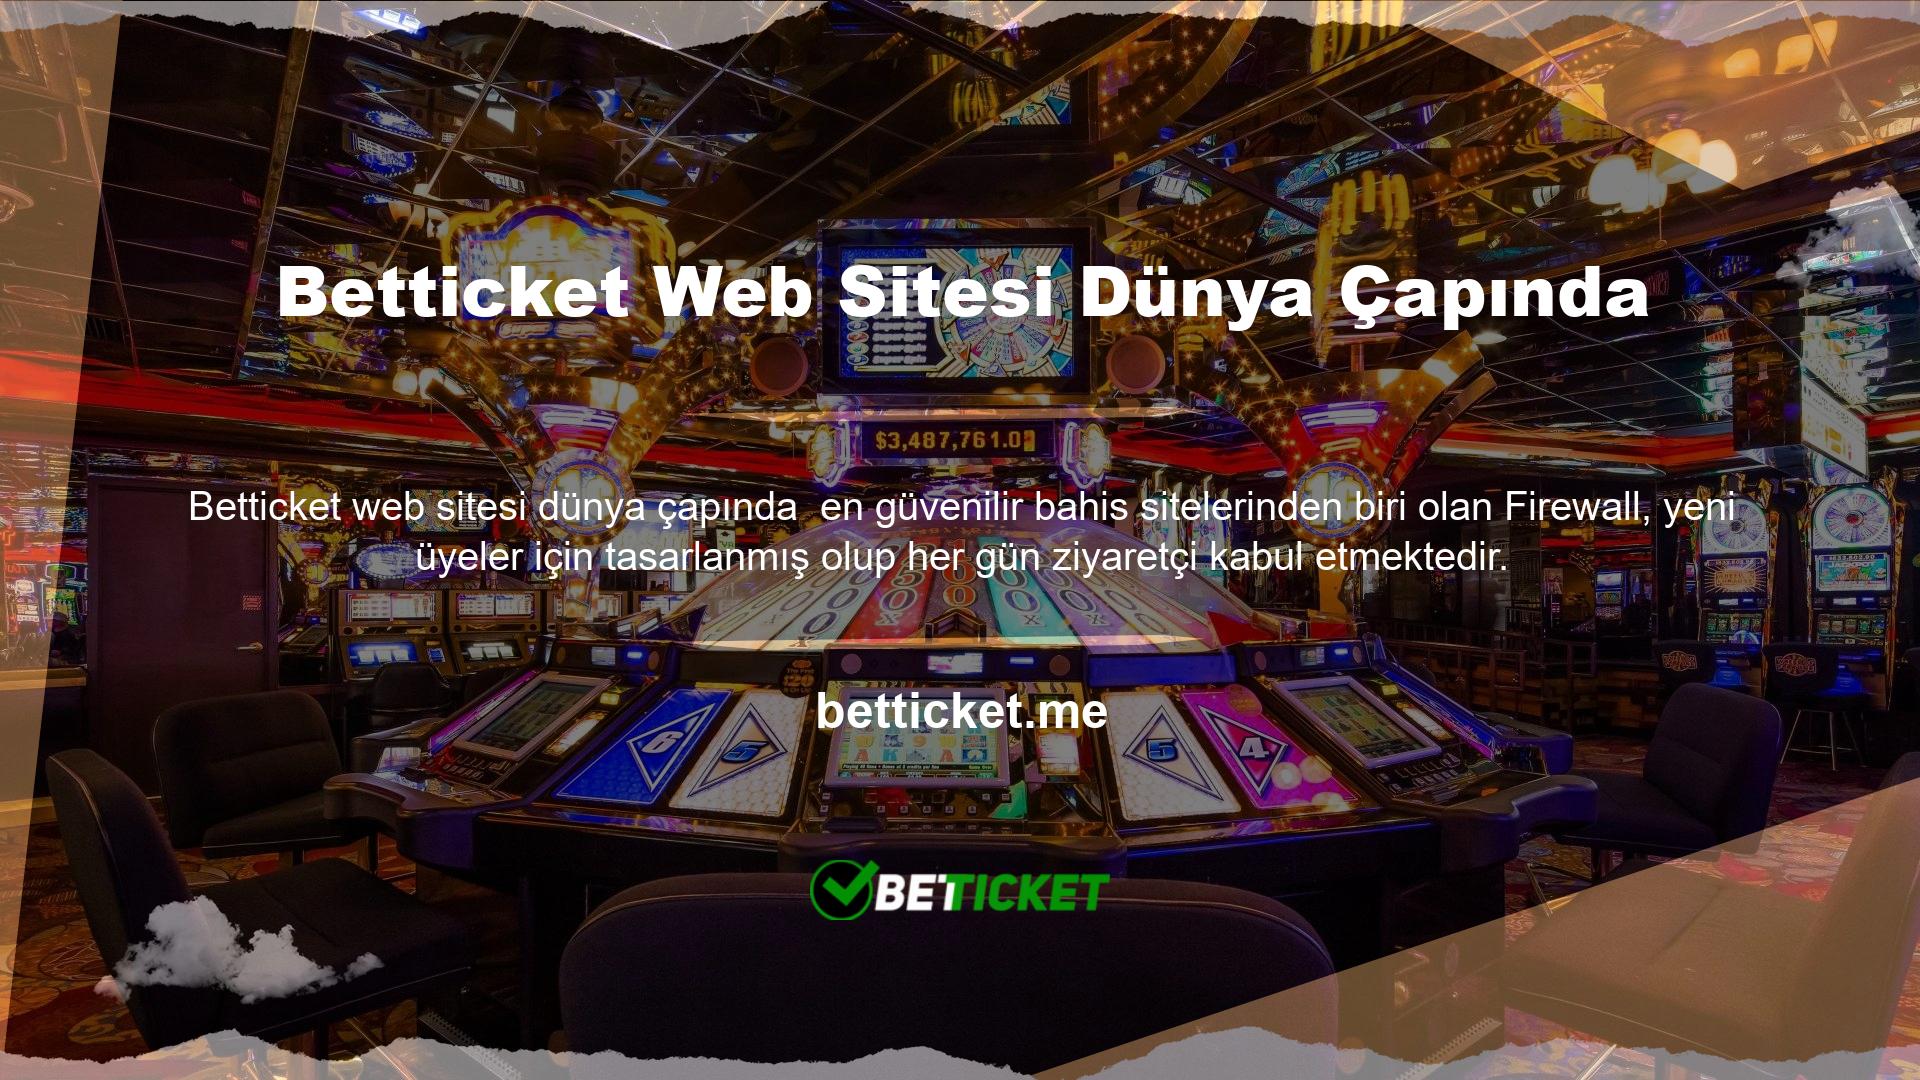 Betticket web sitesi dünya çapında kullanılan ayrıcalıklı bir platformdur ve geniş bir uluslararası kitleye hitap etmektedir